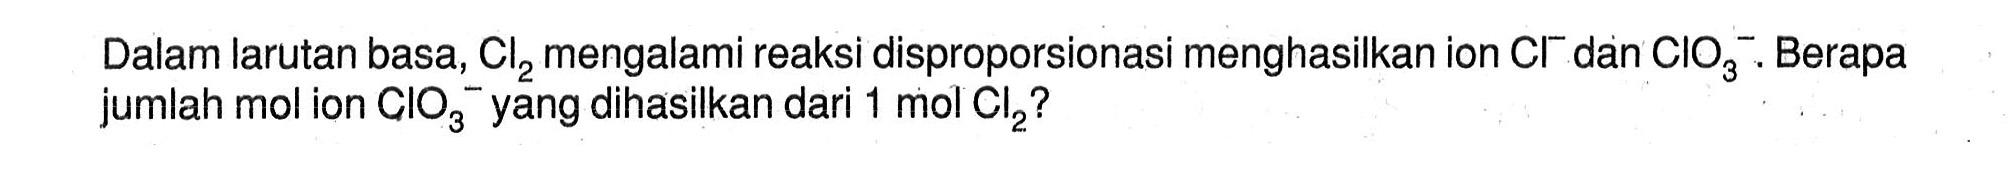 Dalam larutan basa, Cl2 mengalami reaksi disproporsionasi menghasilkan ion Cl^- dan CIO3^-. Berapa jumlah mol ion CIO3^- yang dihasilkan dari 1 mol Cl2?